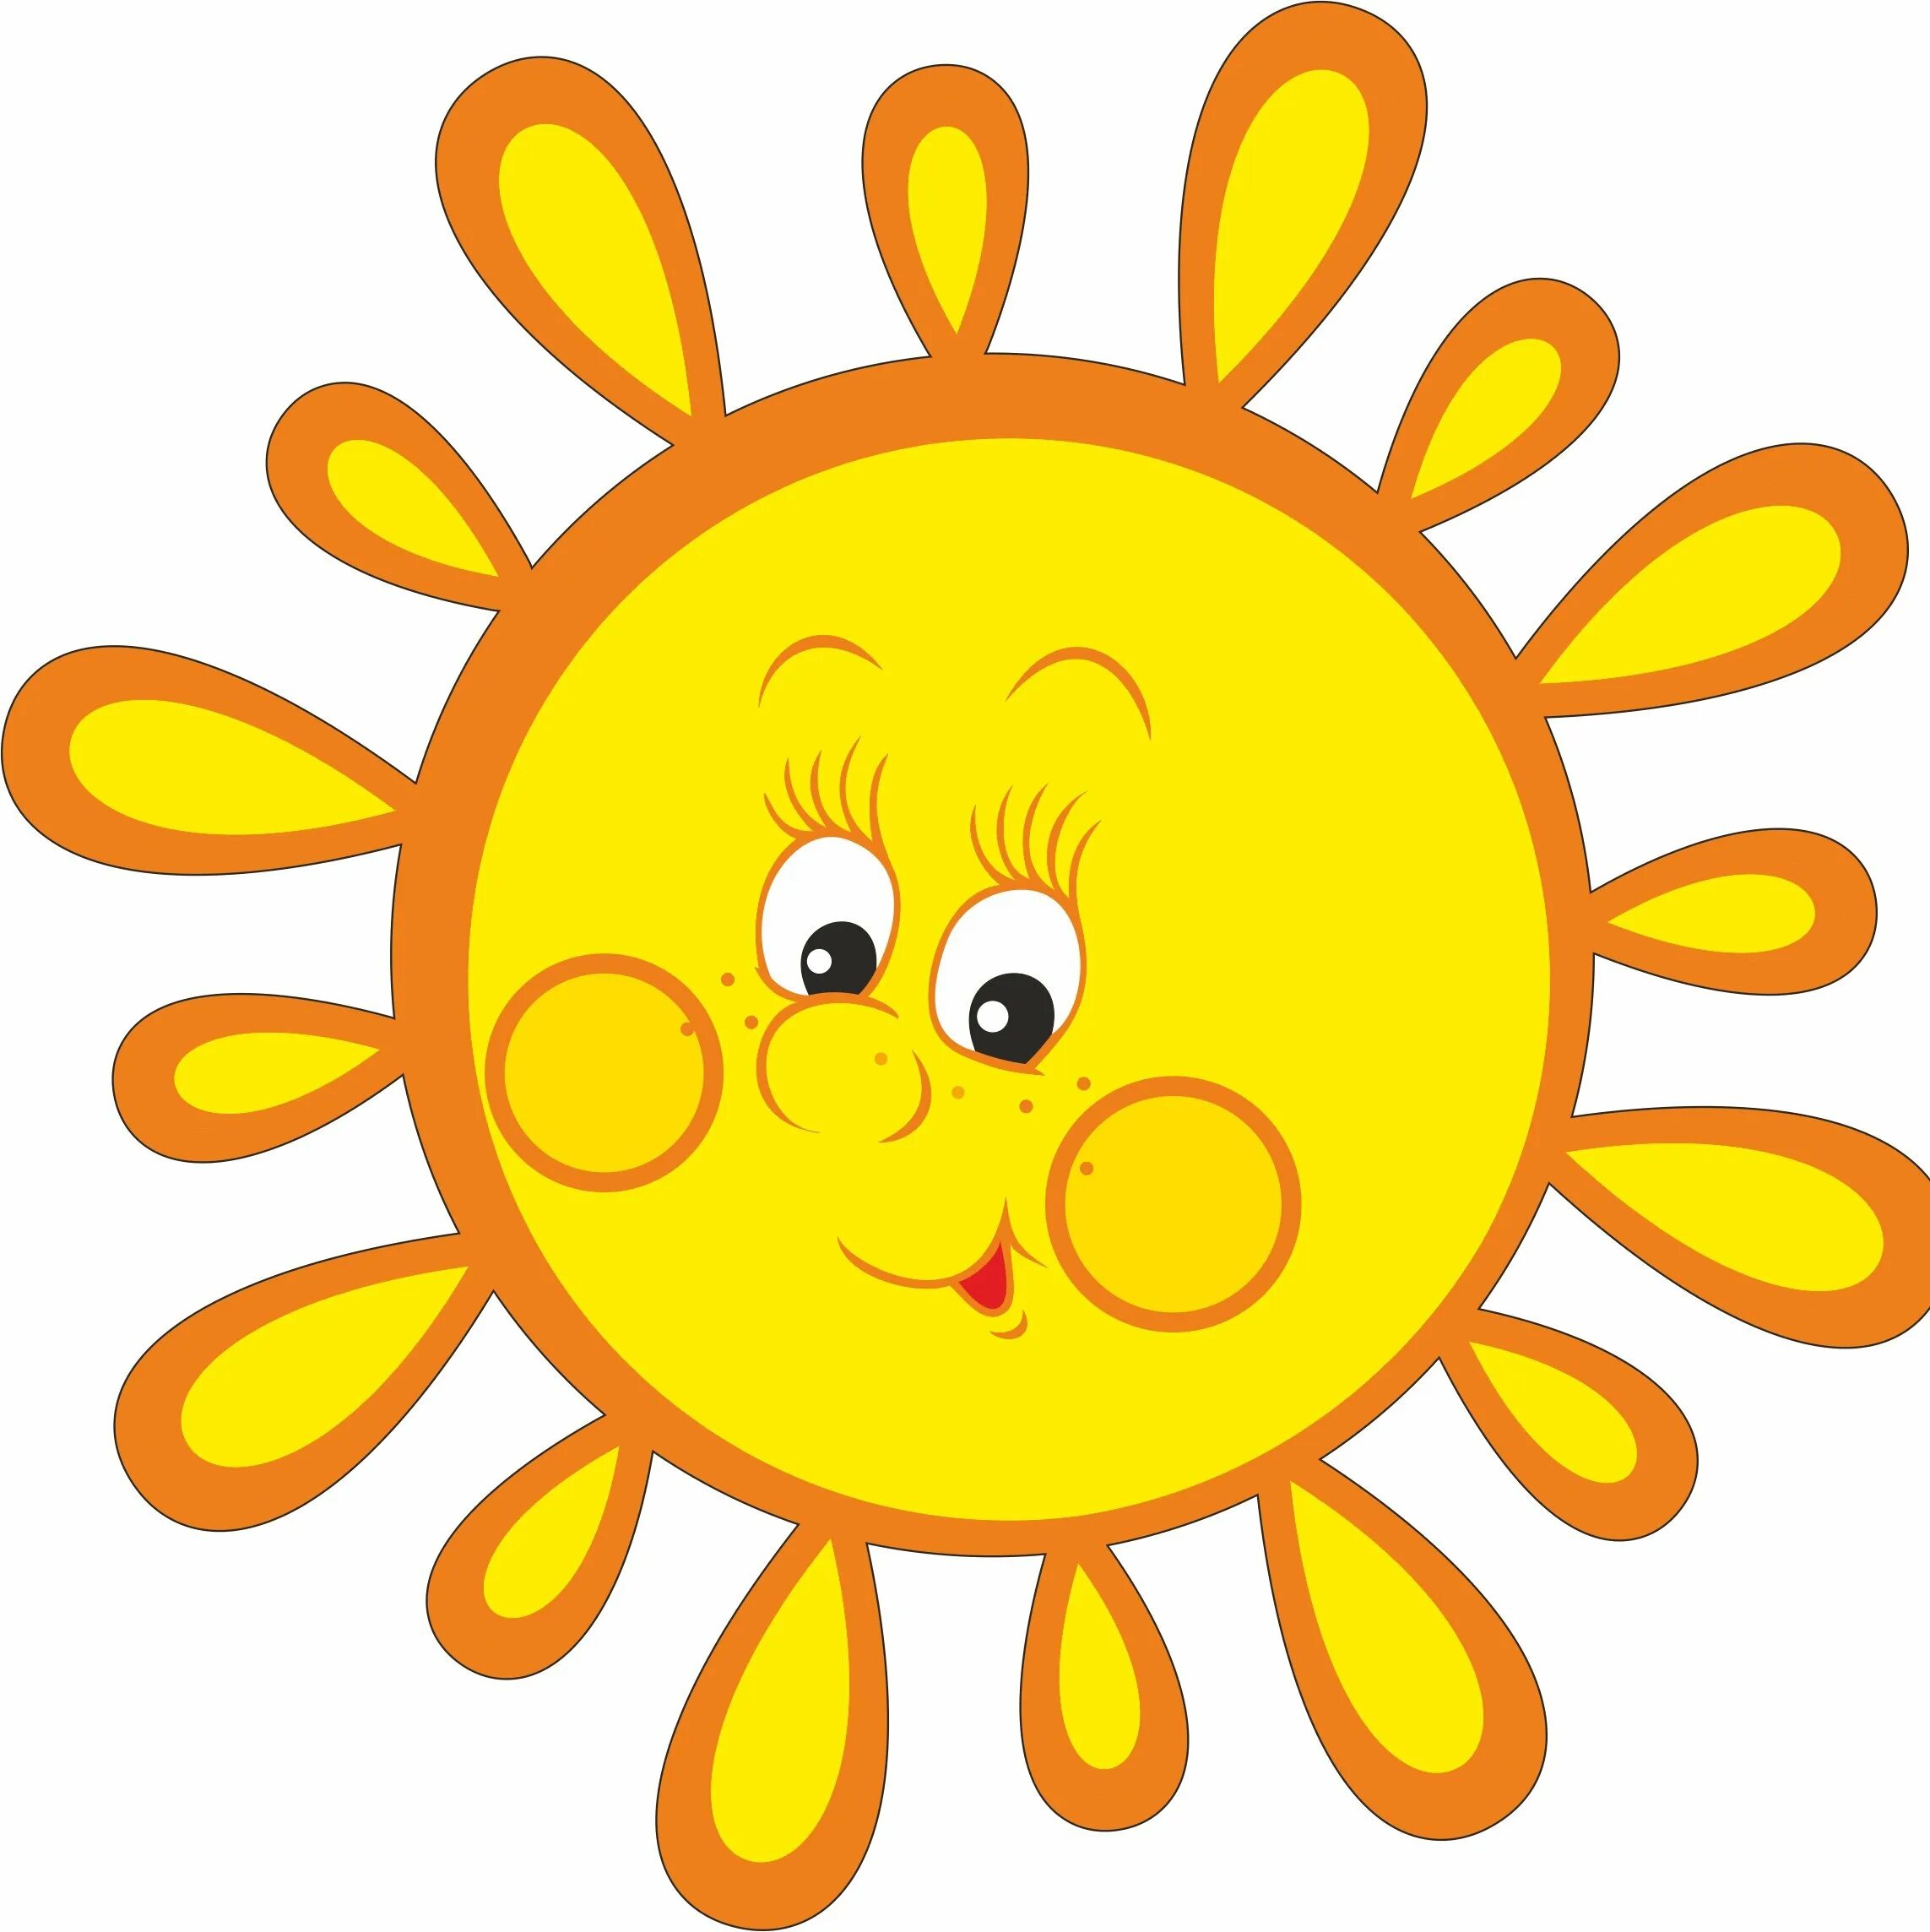 Цветные картинки солнышка. Солнышко для детей. Солнышко картинка для детей. Солнце рисунок для детей. Солнце для детского сада.